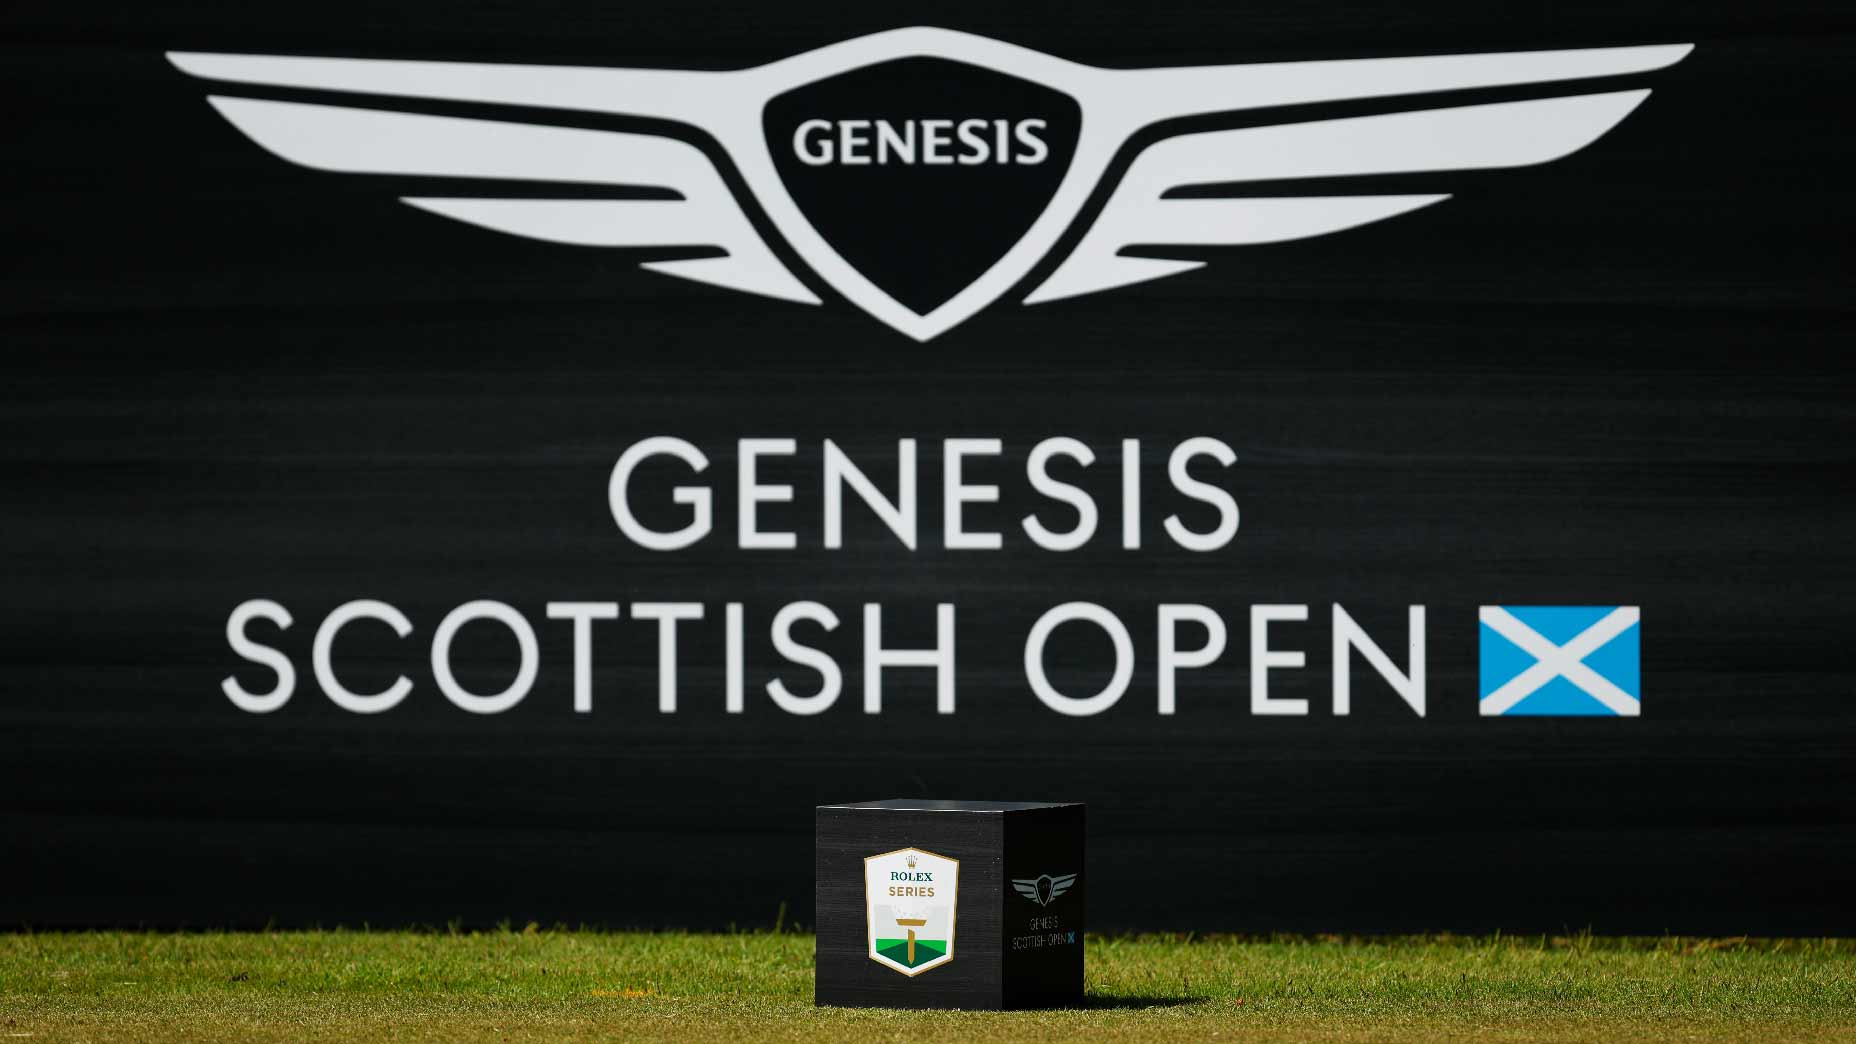 Genesis Open Total purse, payout breakdown, winner's share